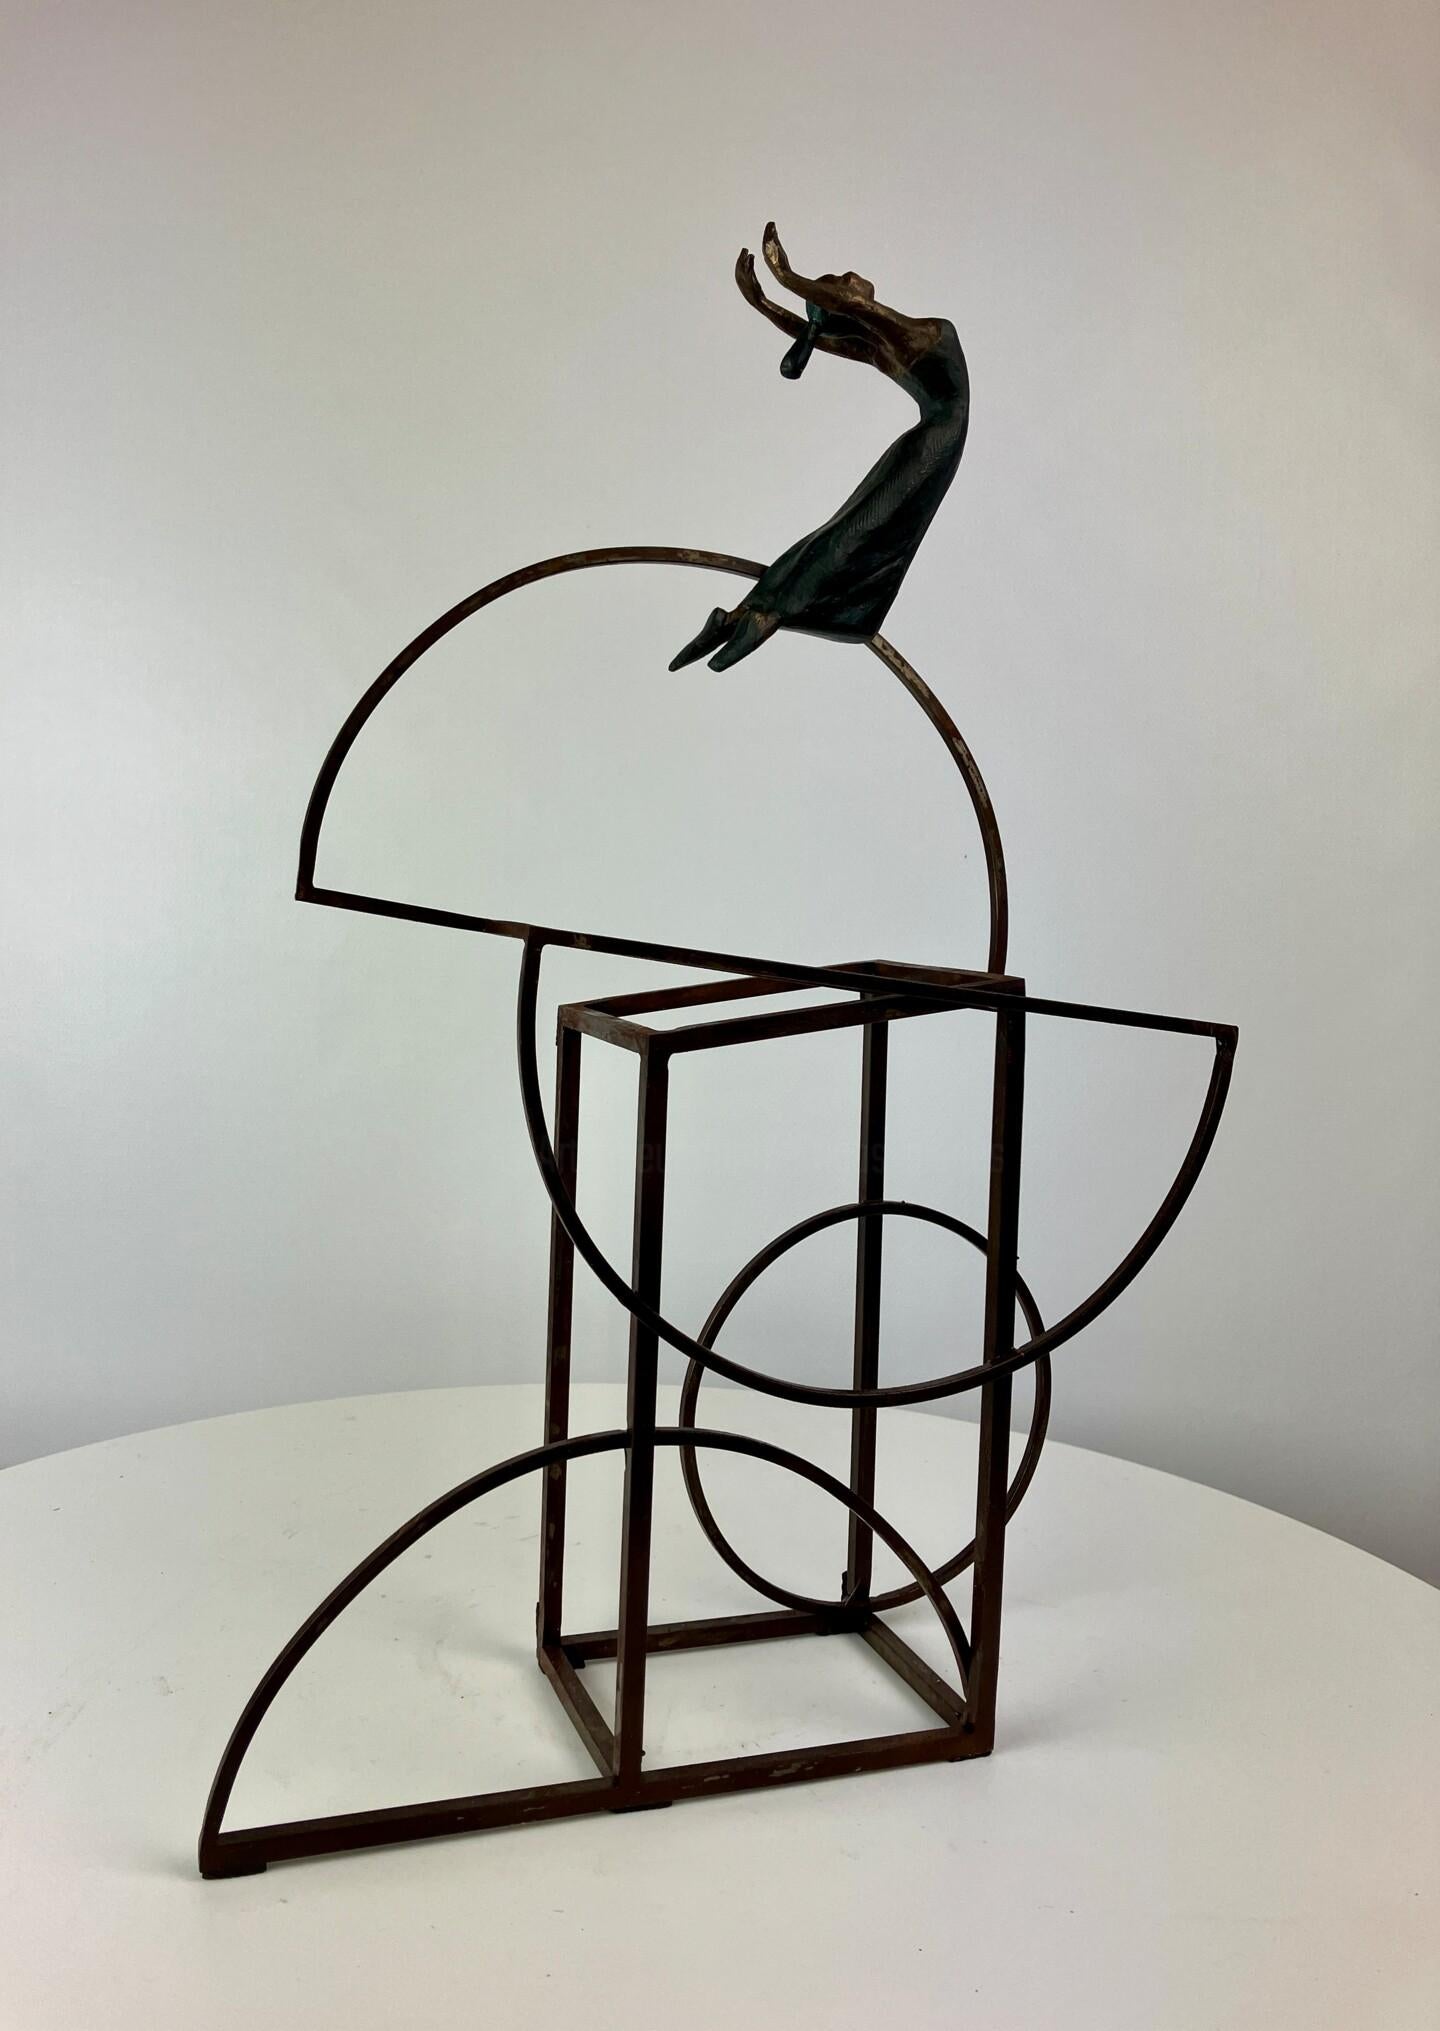 Joan Artigas Planas Figurative Sculpture - "Bauhus II" contemporary bronze table, mural sculpture figurative girl freedom